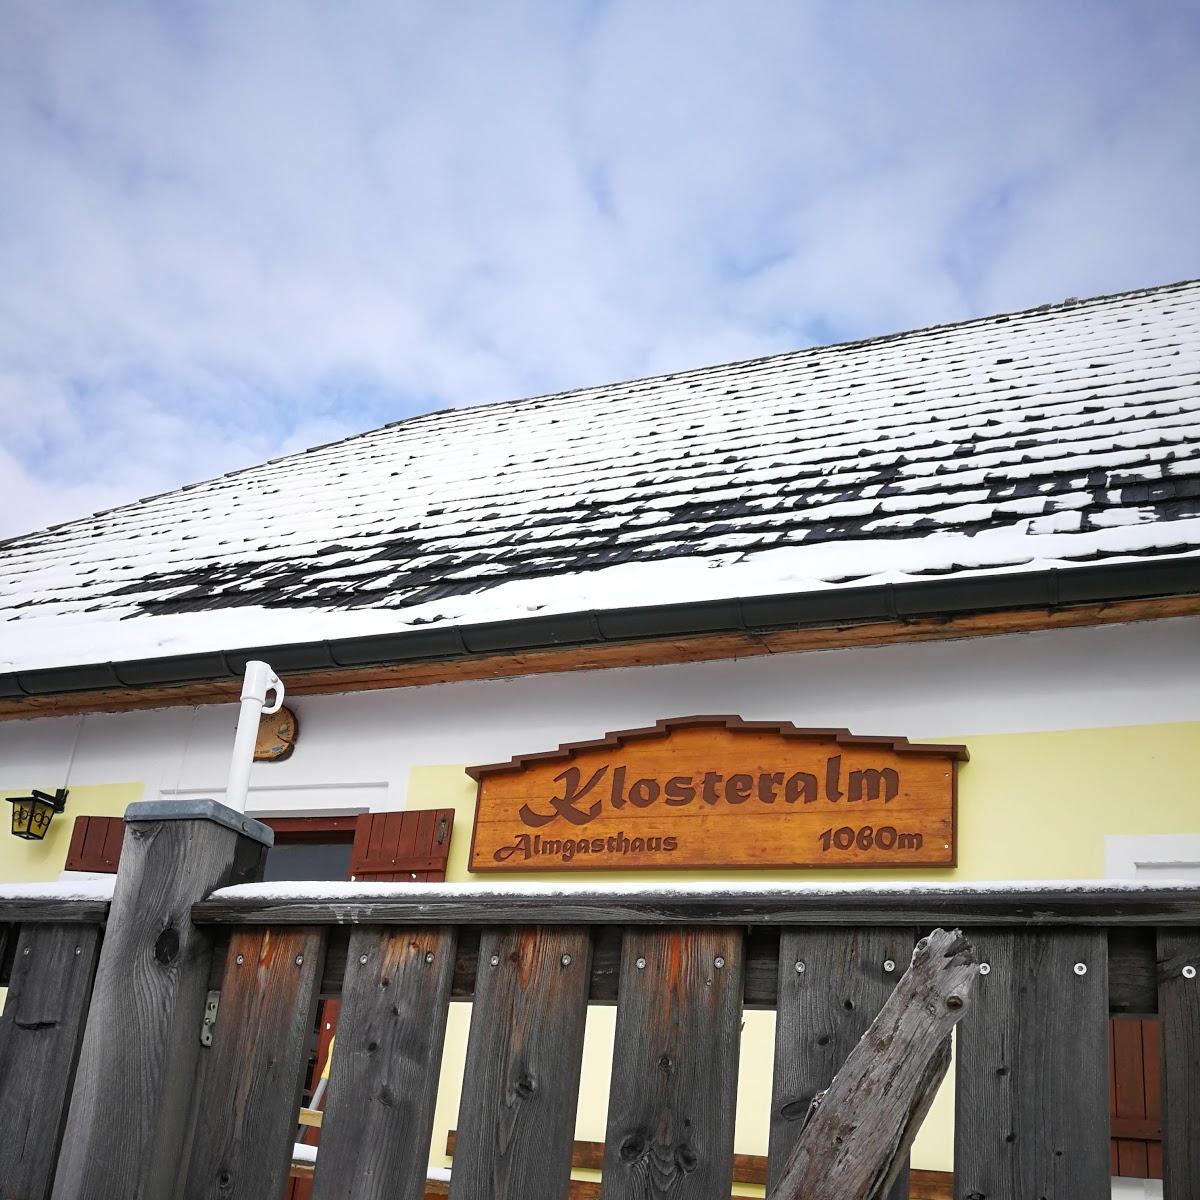 Restaurant "Almgasthaus Klosteralm" in Hintereben